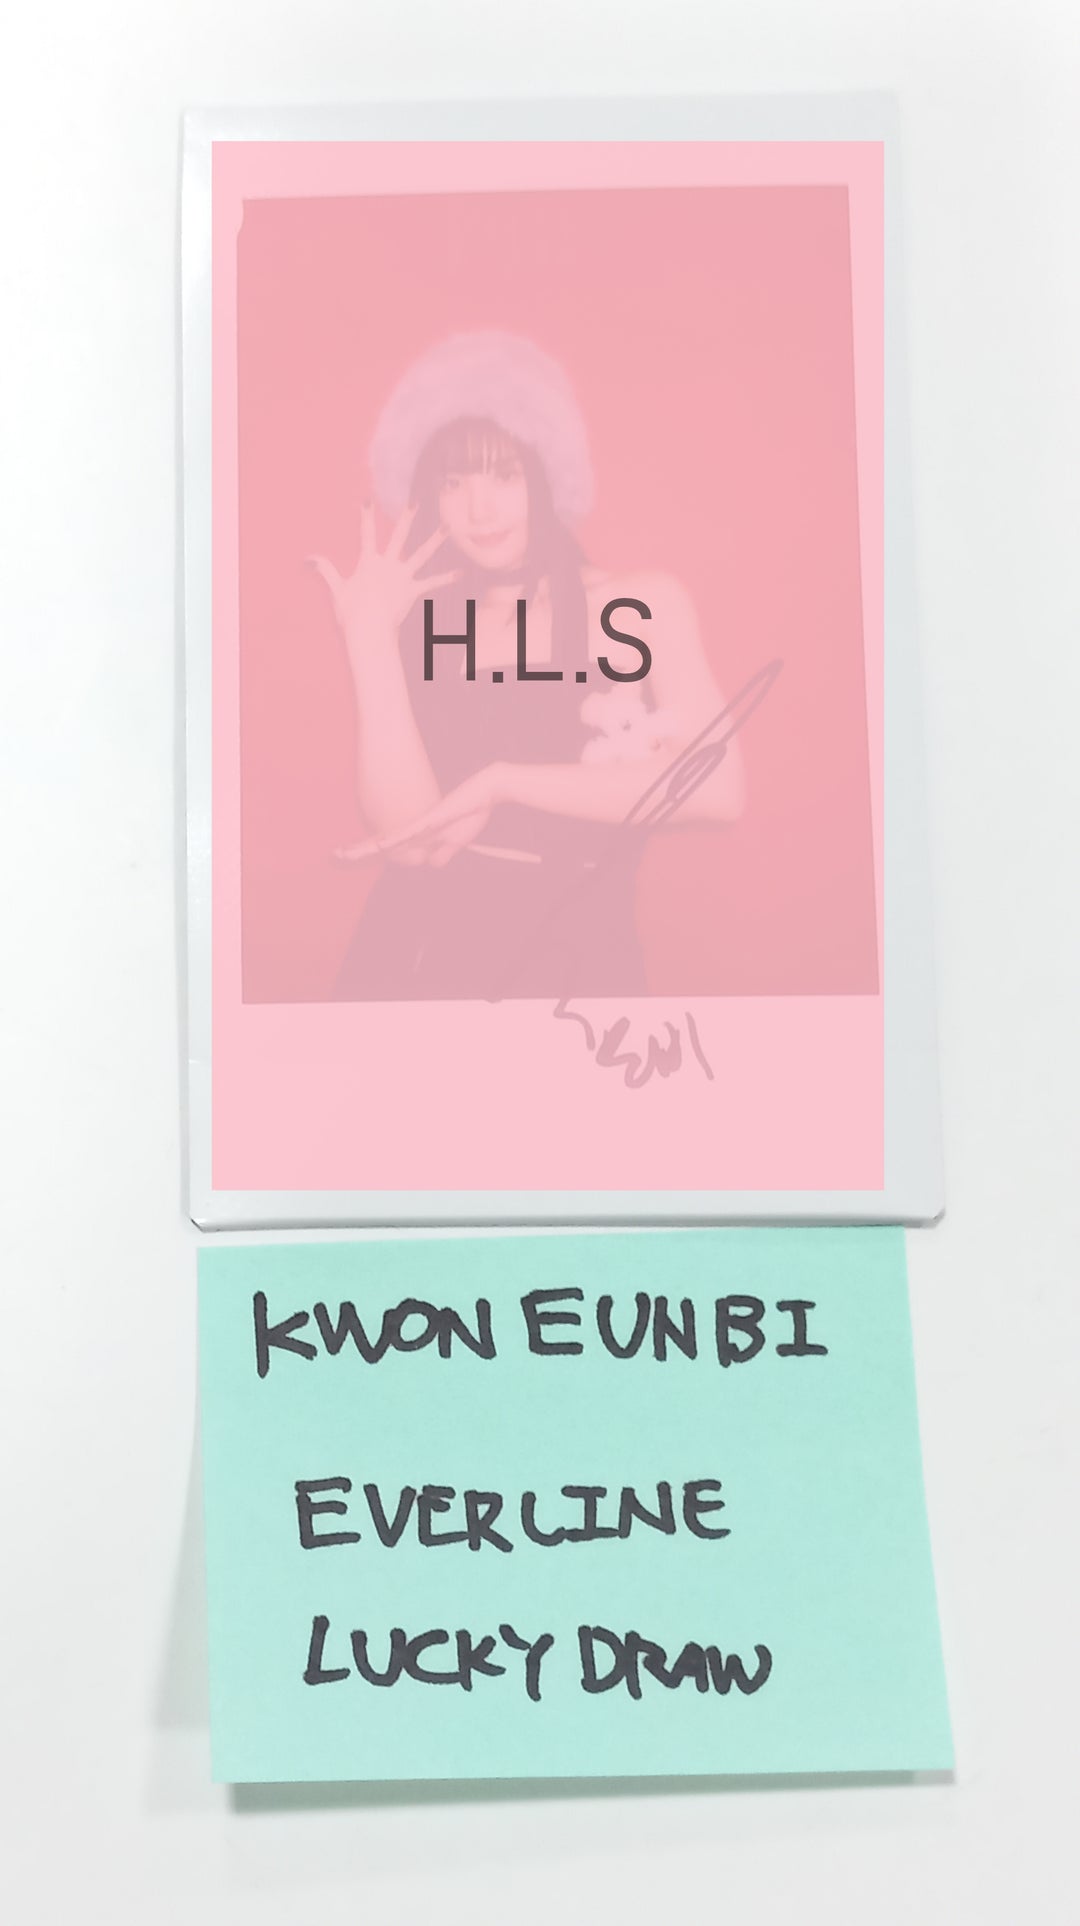 Kwon Eunbi 1st single "The Flash" - Hand Autographed(Signed) Polaroid [23.09.26]